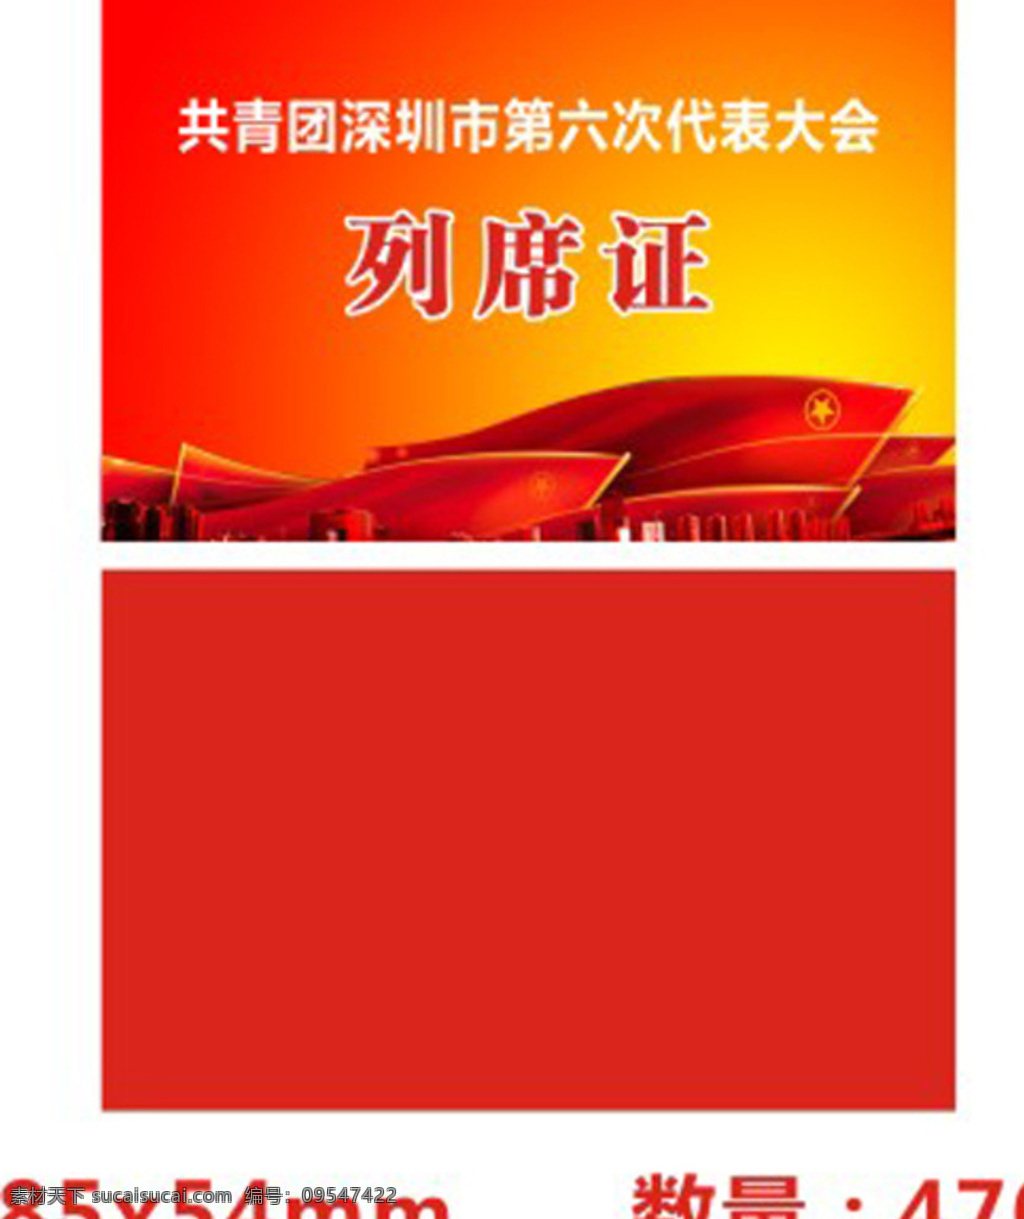 列席证 会议 证件 红旗 共青团 海报广告 红色